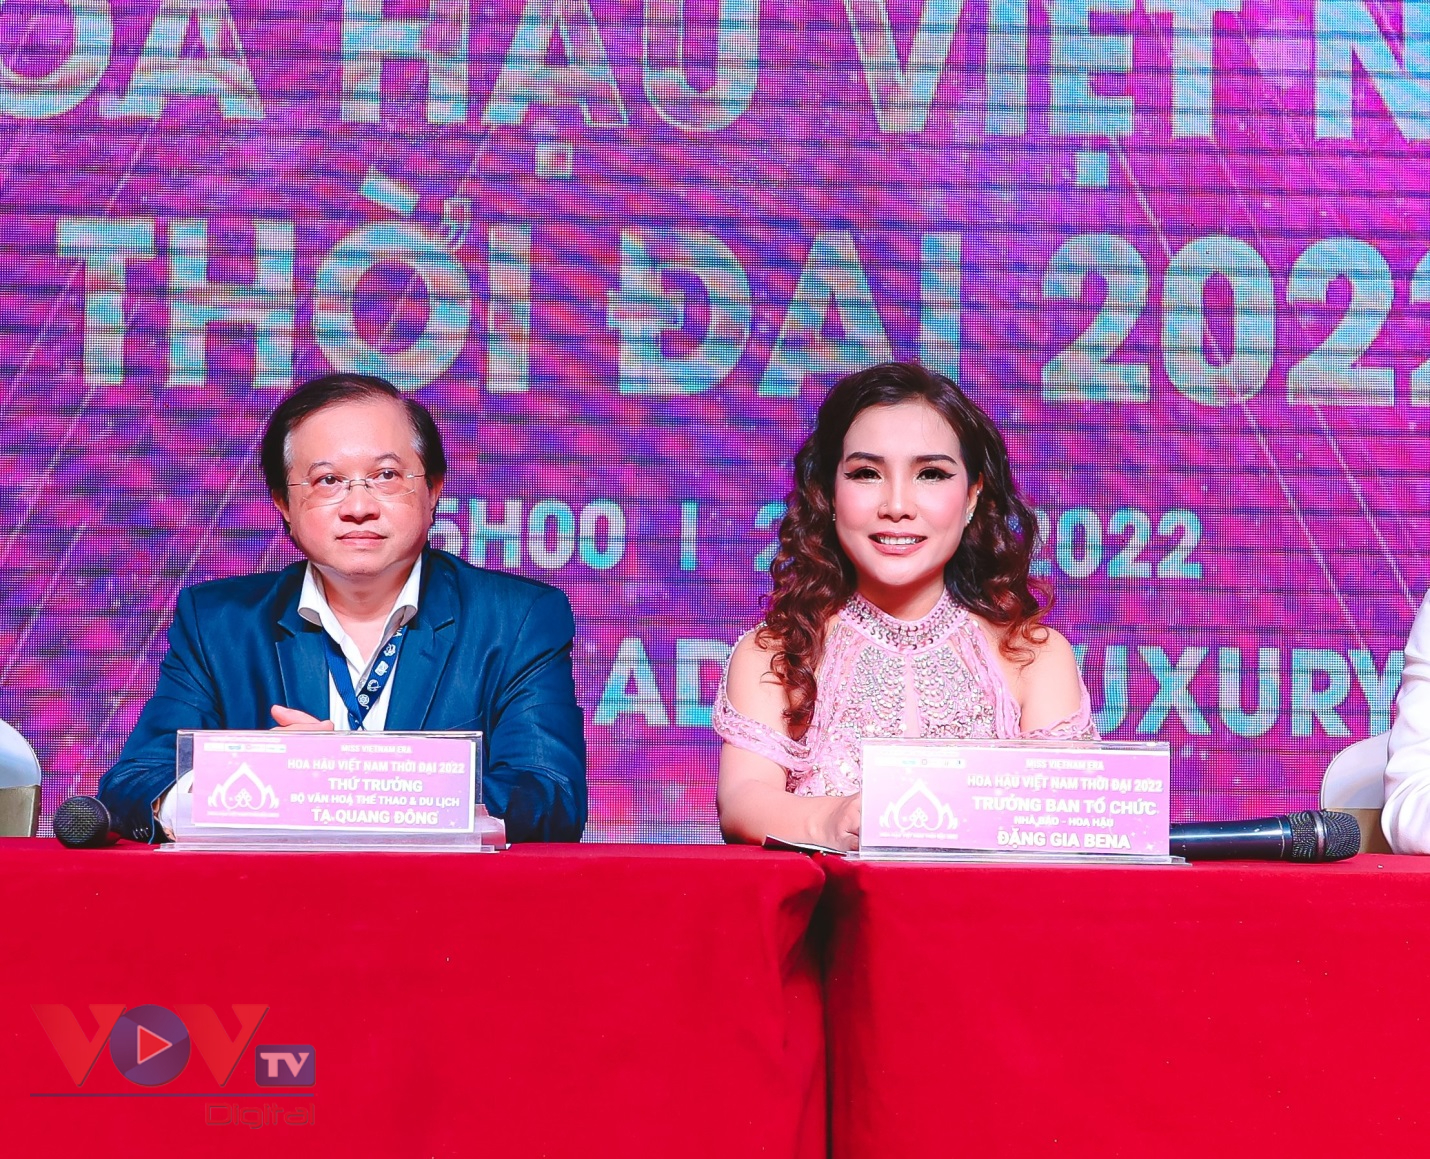 Họp báo ra mắt cuộc thi 'Hoa hậu Việt Nam Thời đại' năm 2022 - Ảnh 1.